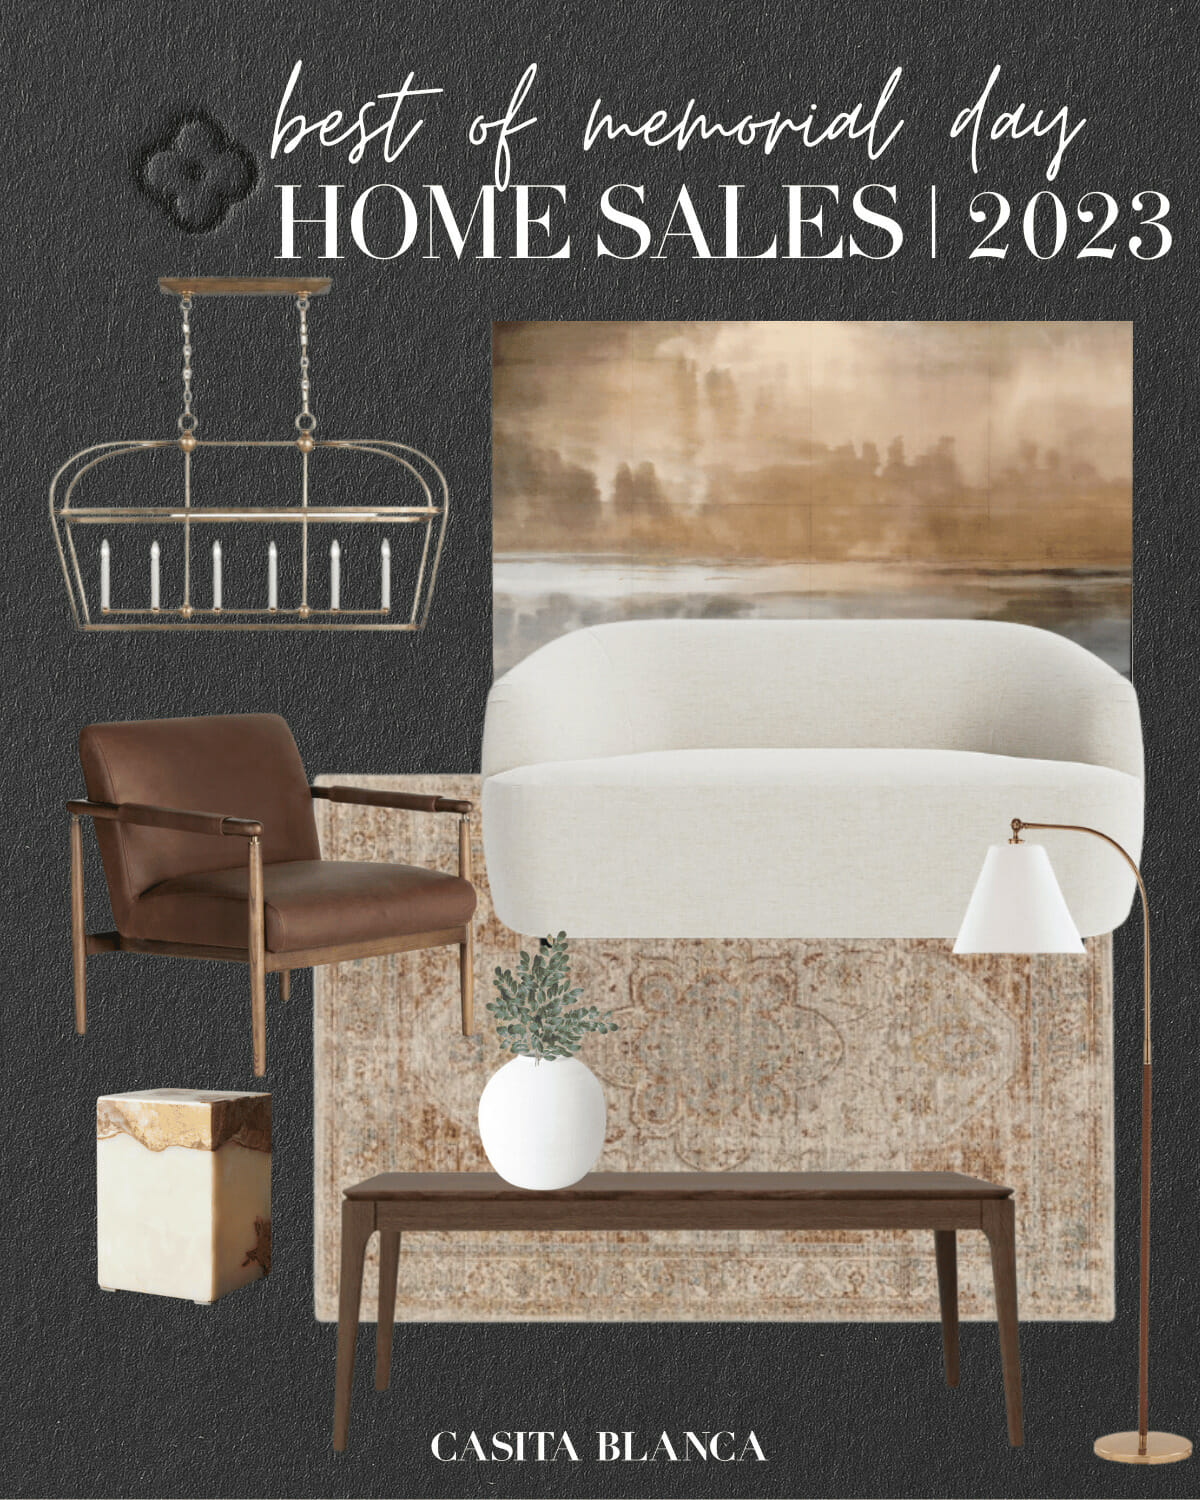 Best of Memorial Day 2023 Home Sales Casita Blanca